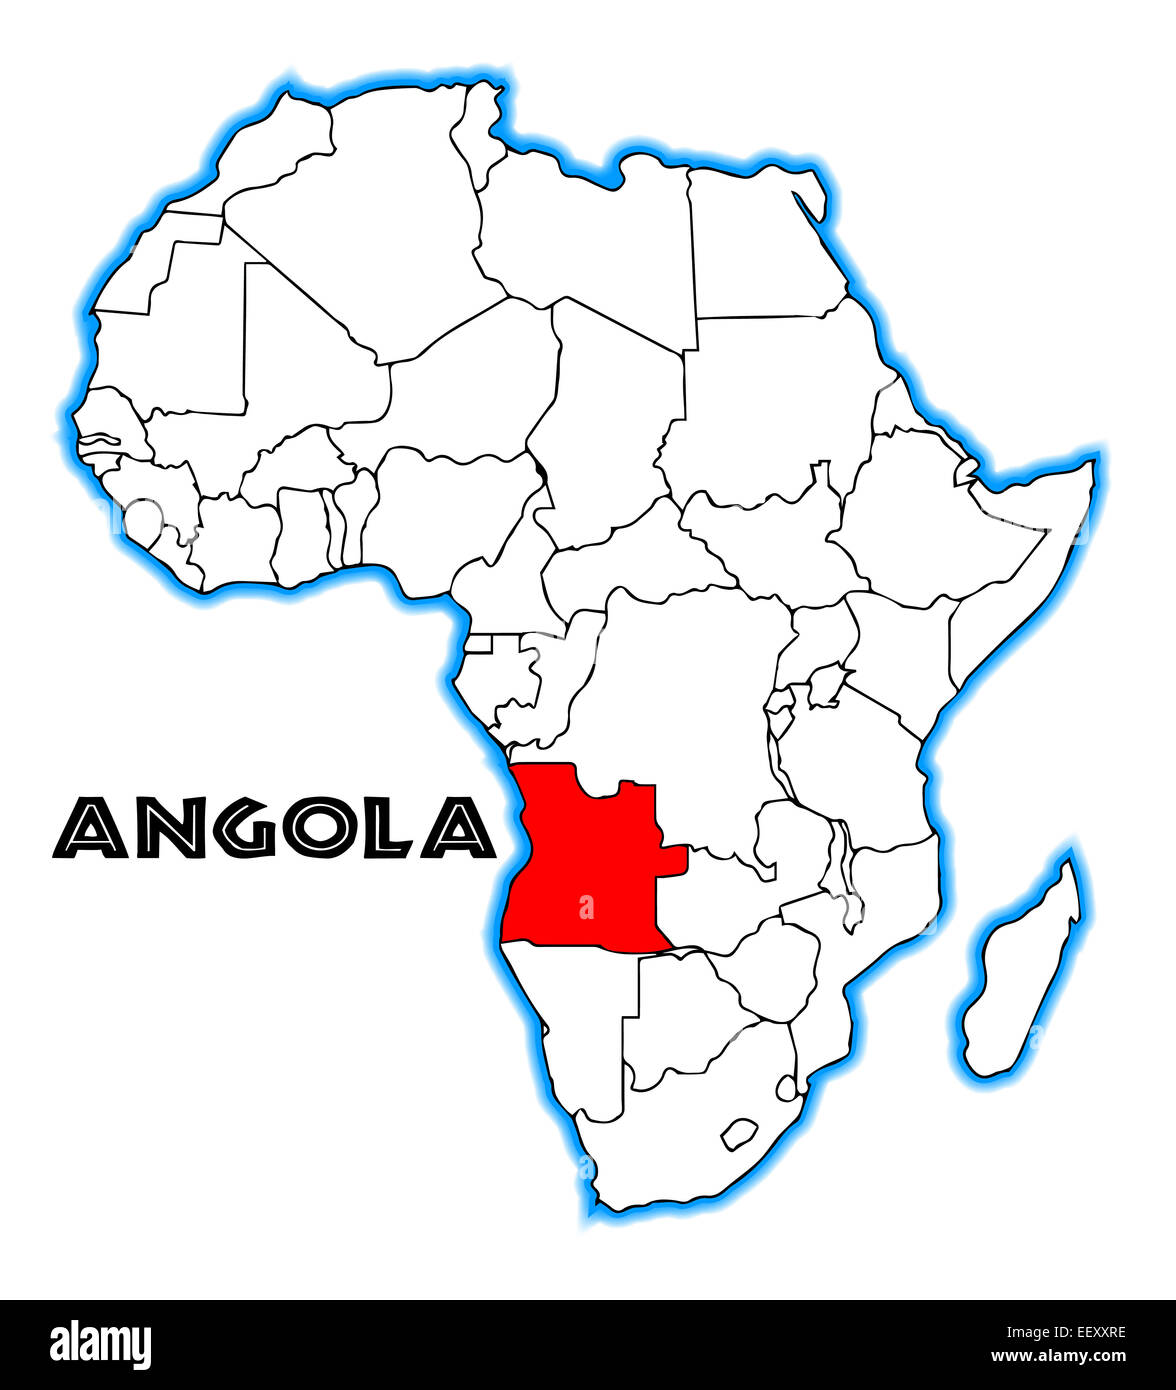 Angola-Gliederung-Einschub in einer Karte von Afrika über einen weißen